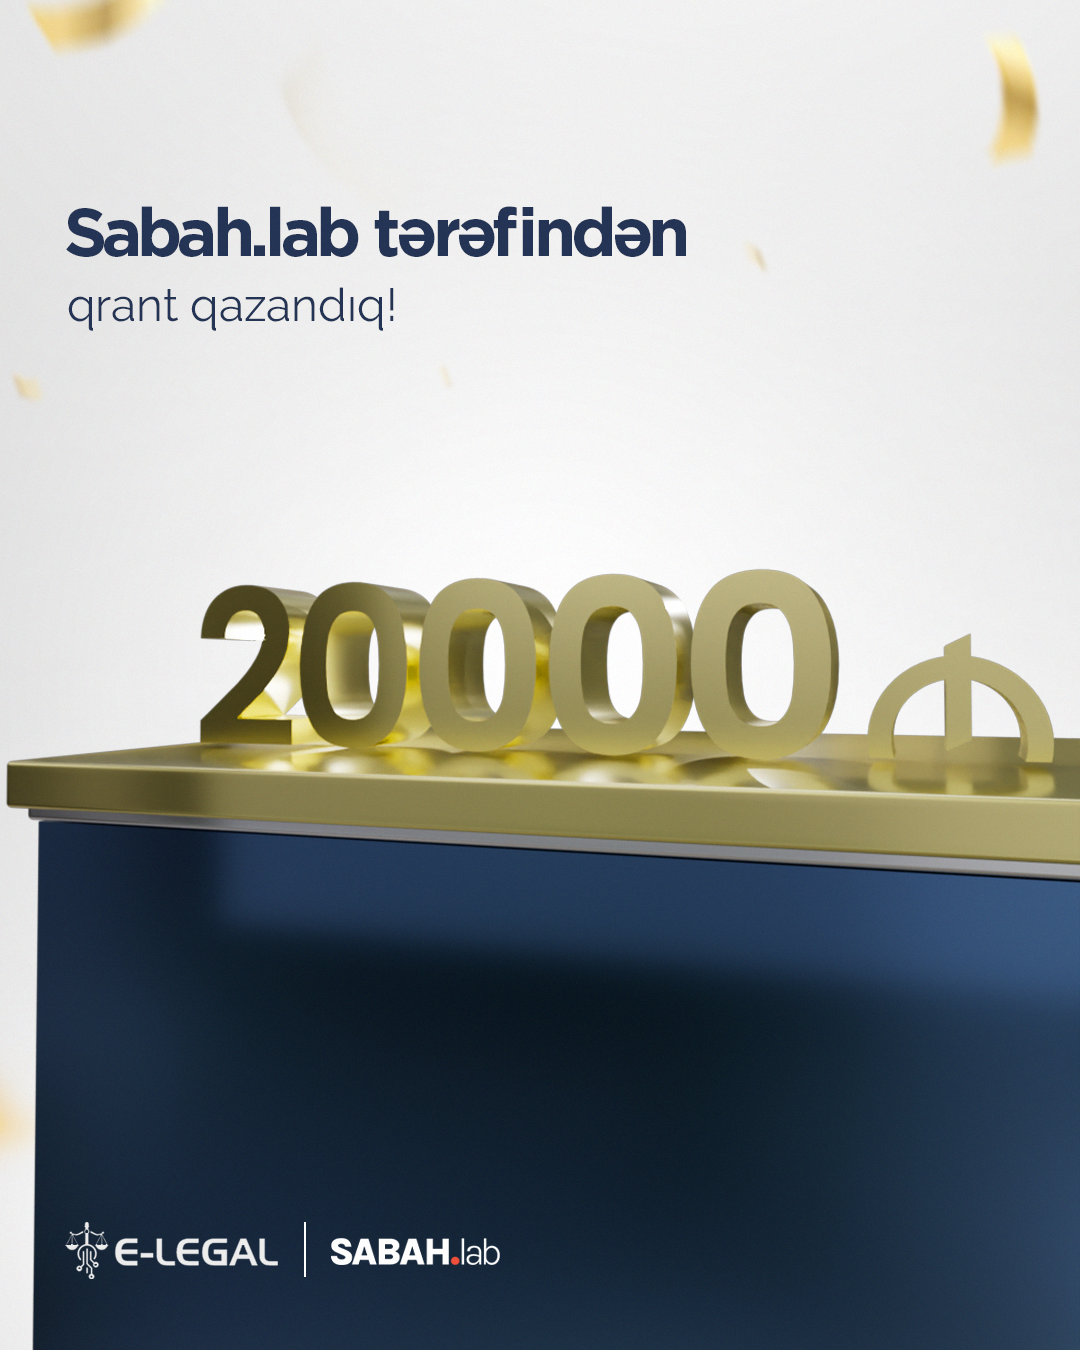 E-LEGAL SABAH.lab tərəfindən 20000 AZN-lik investisiya qazandı!